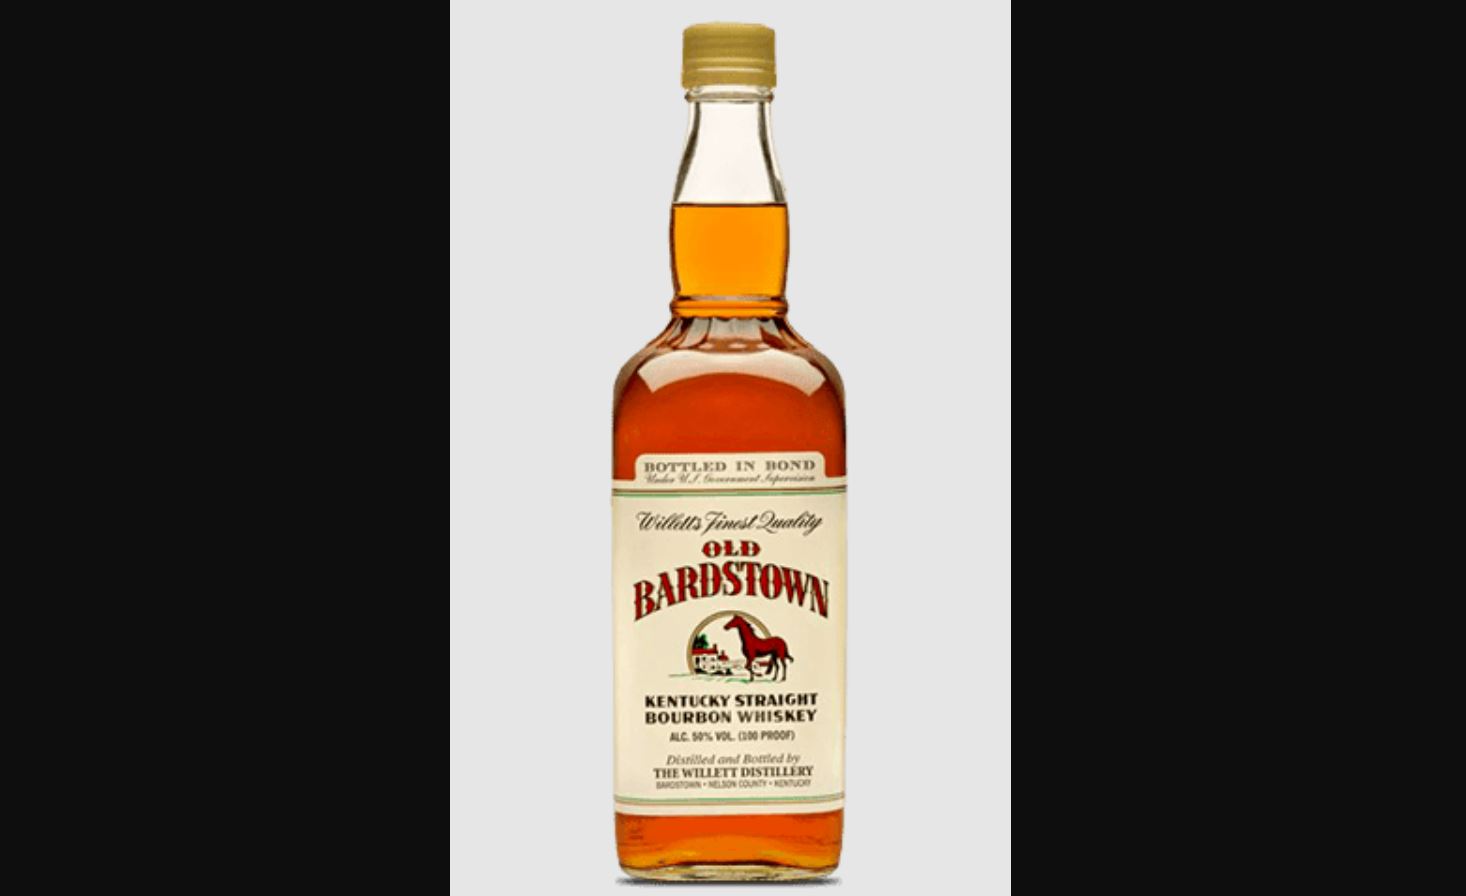 Old Bardstown bottled in Bond